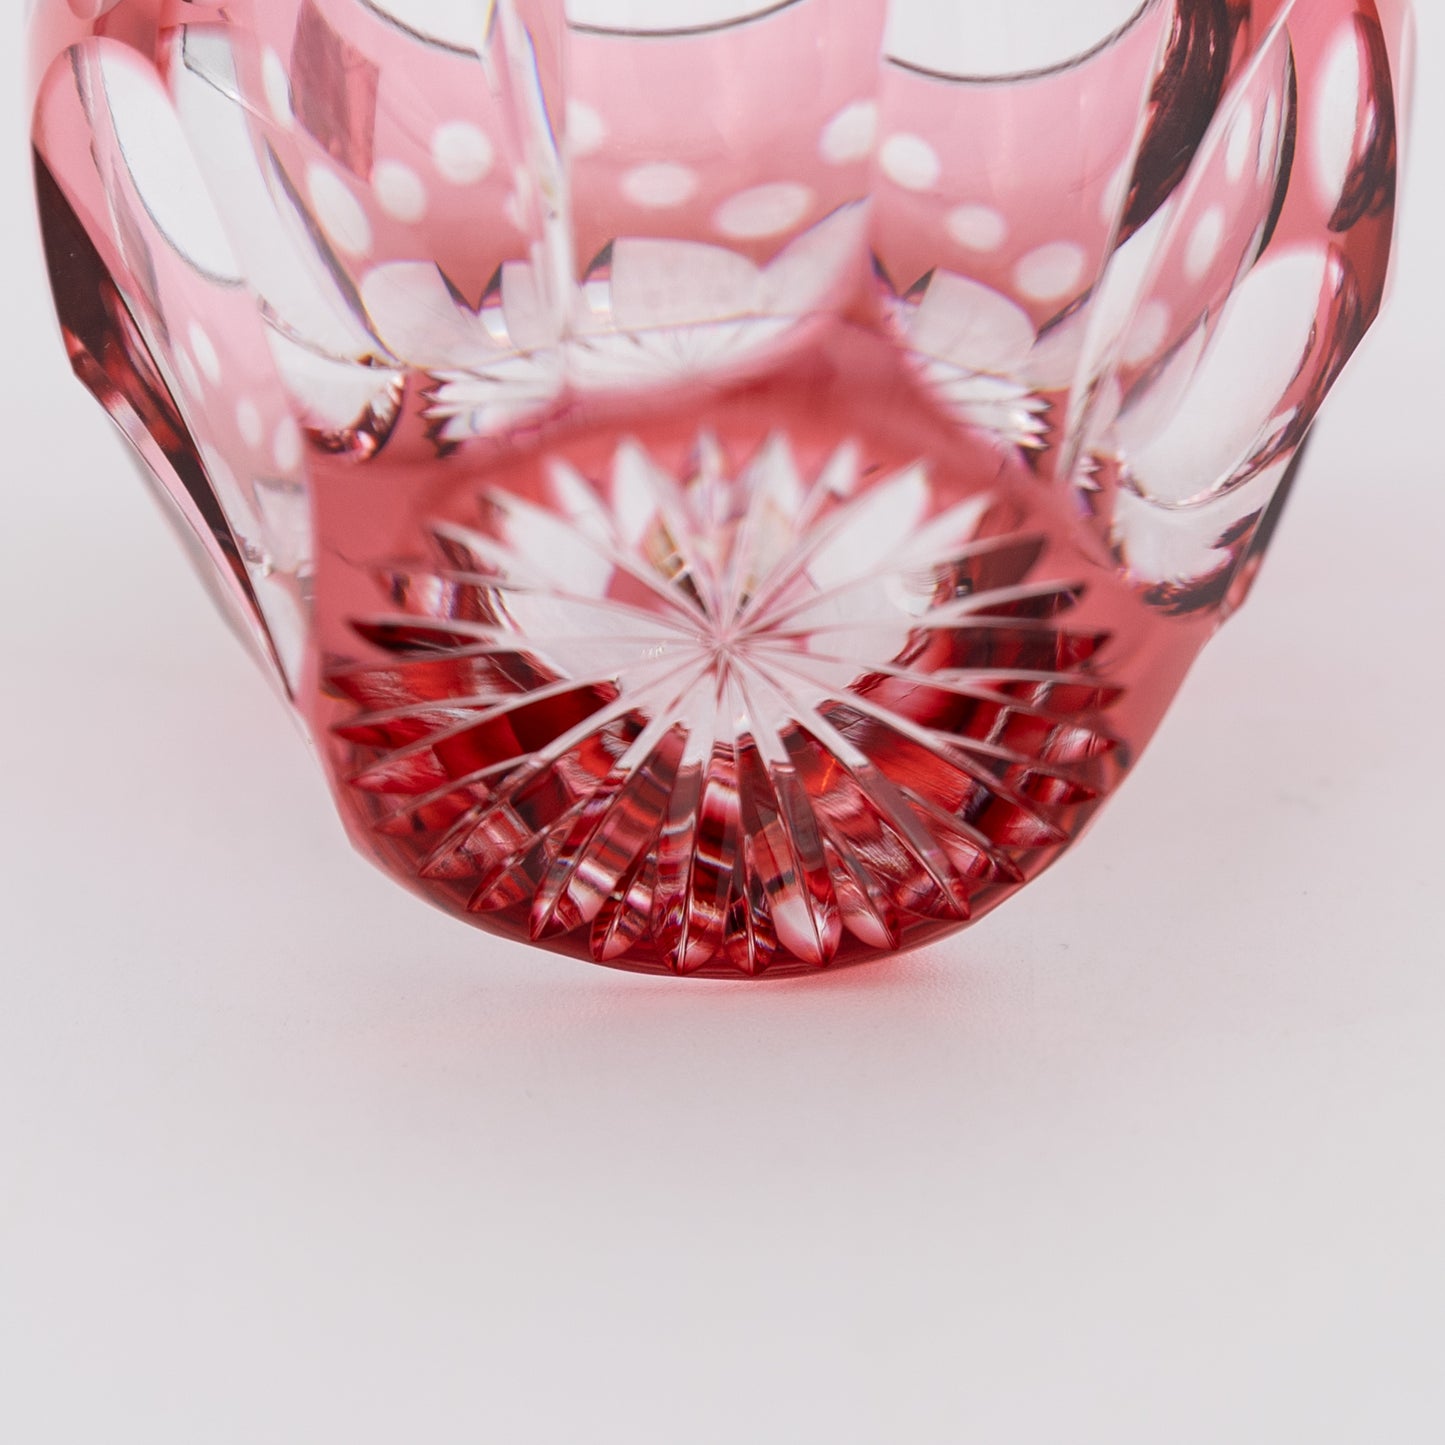 Kagami Crystal - Sake Glass - Sakura